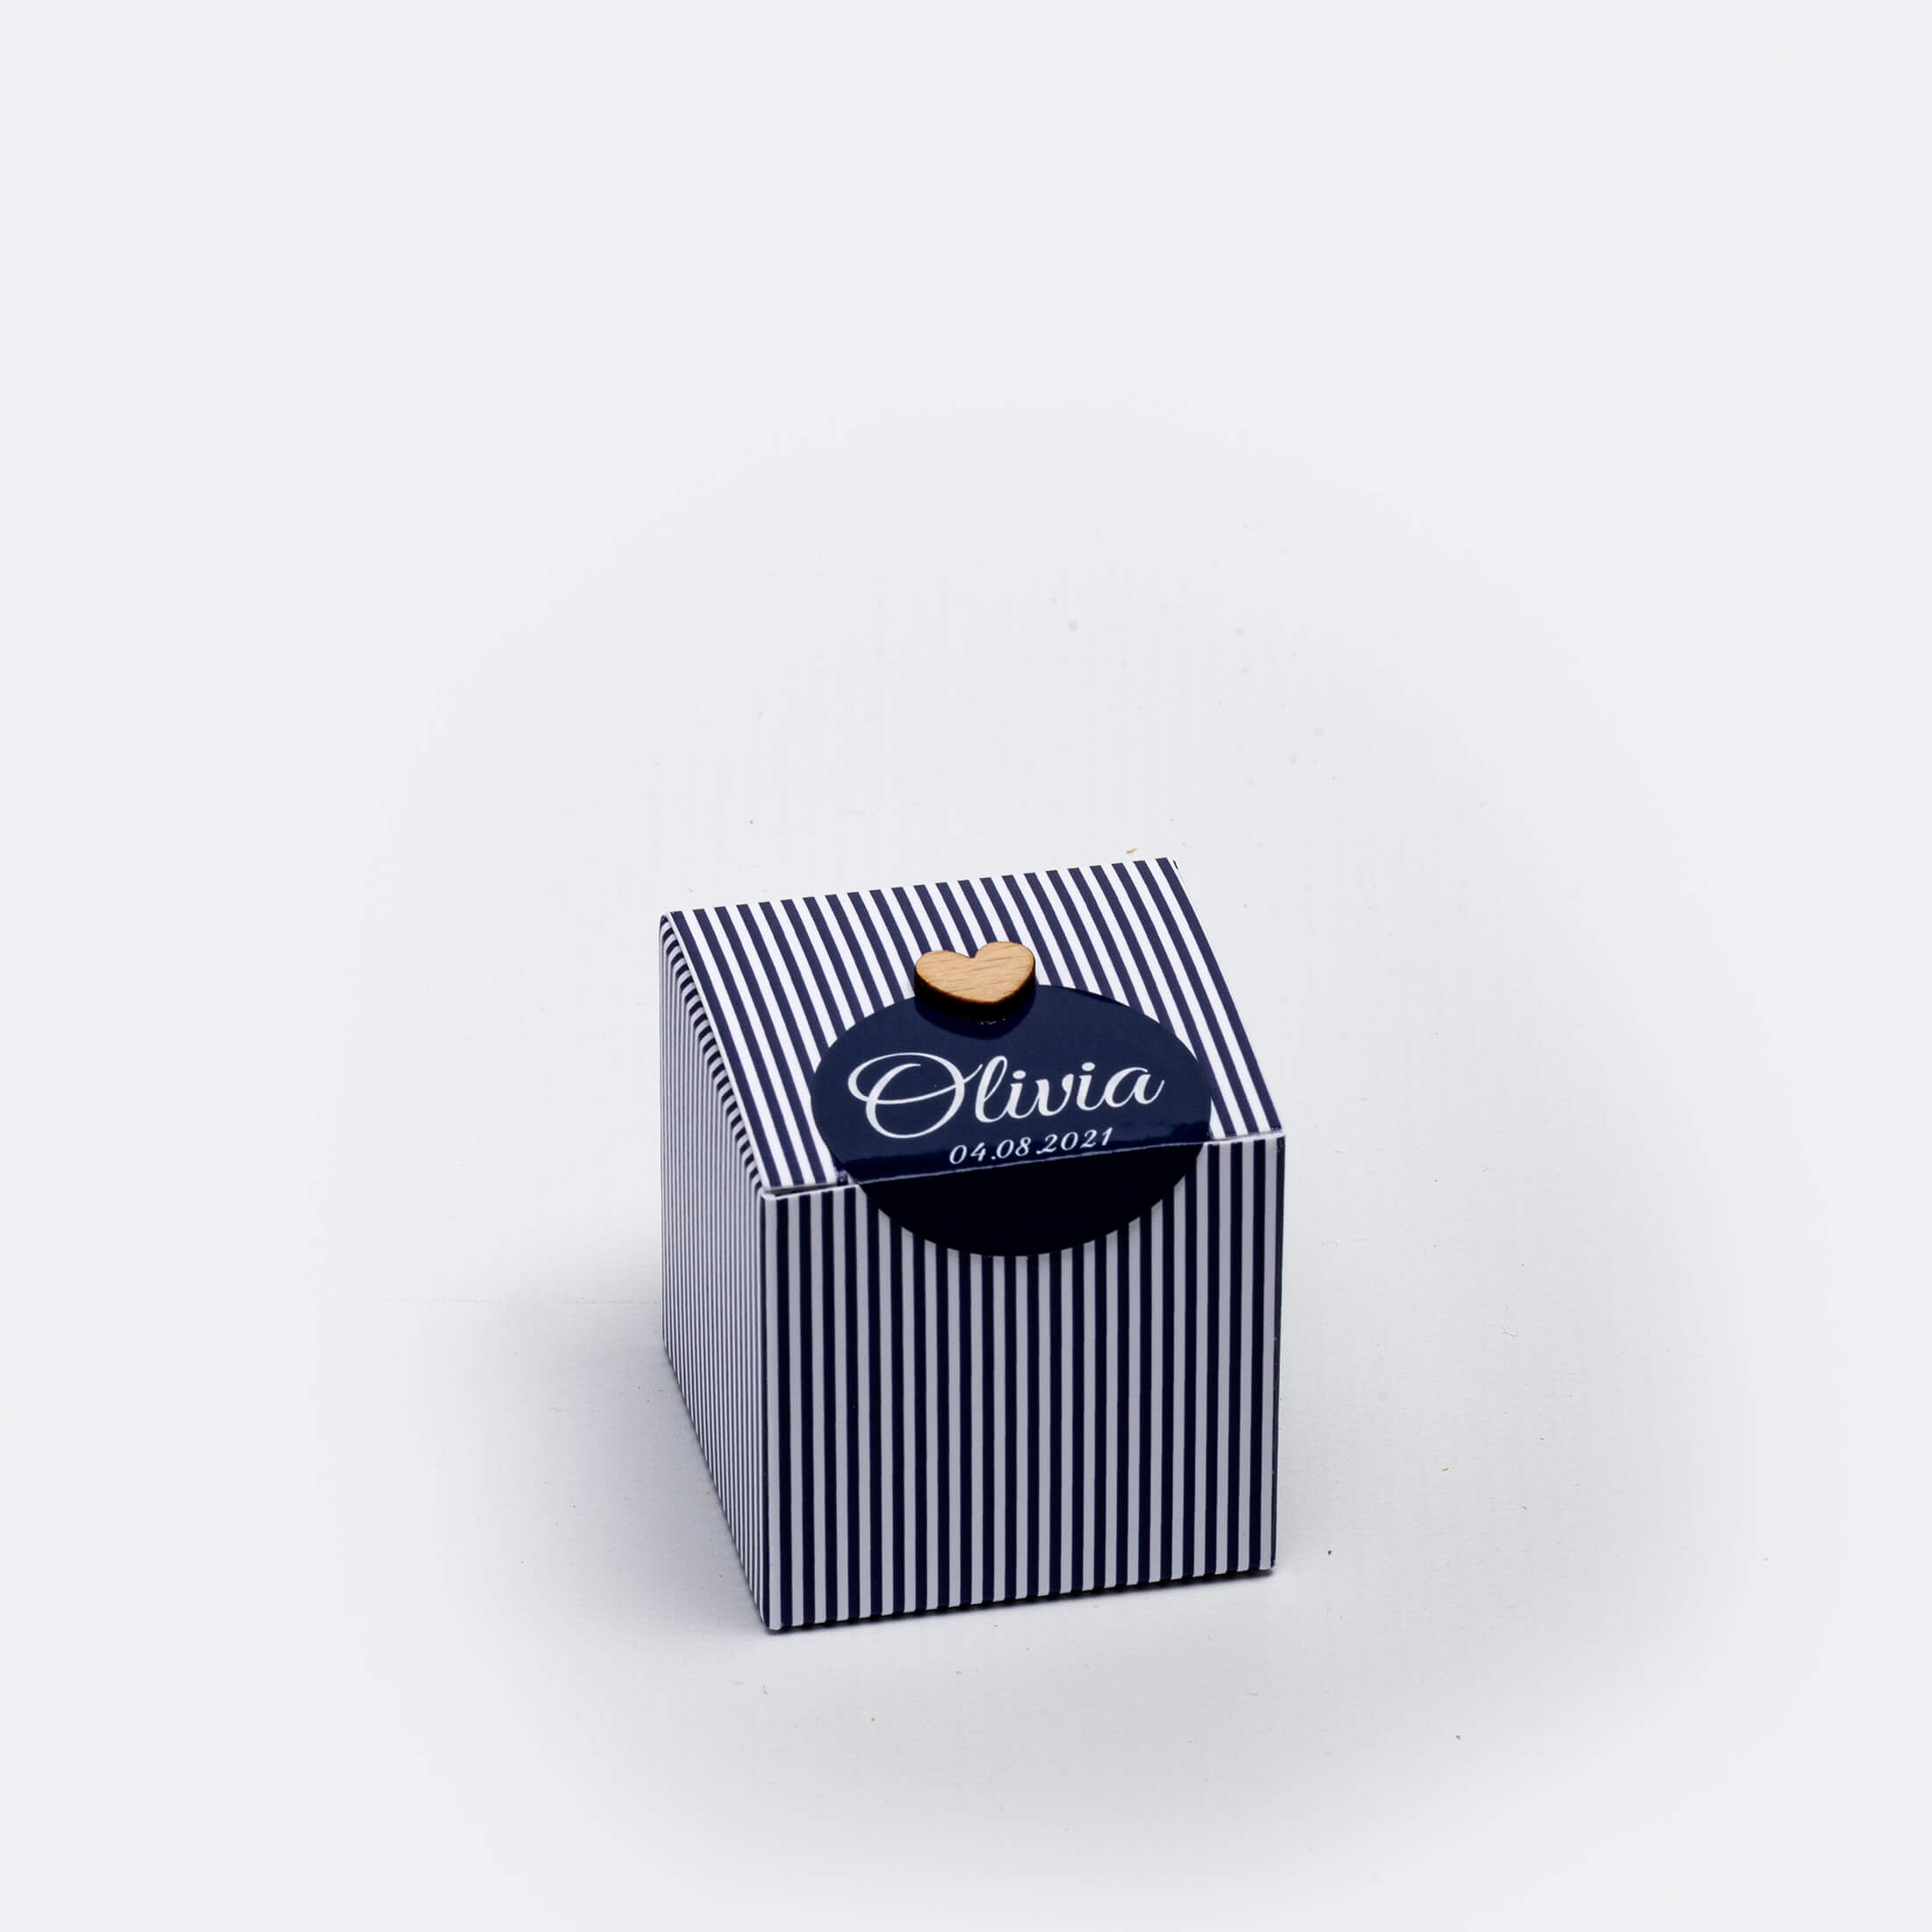 Boîte cubique pour dragées, 5 x 5 x 5 cm., couleur bleu marine, lignée